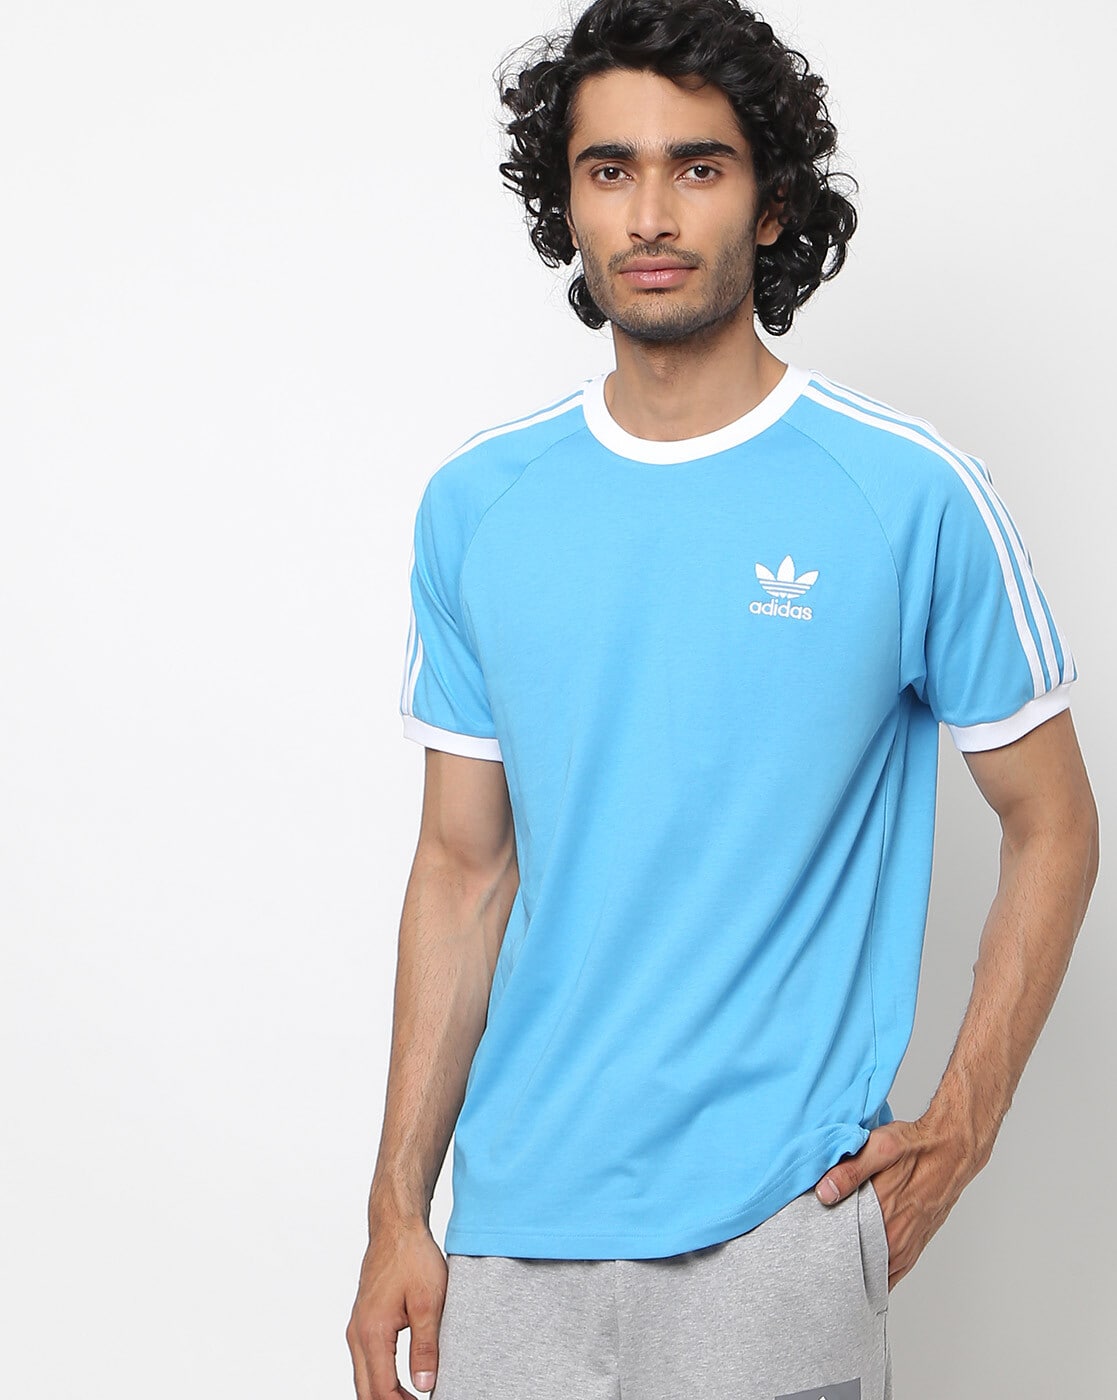 Buy Tshirts Men Adidas Originals Online | Ajio.com